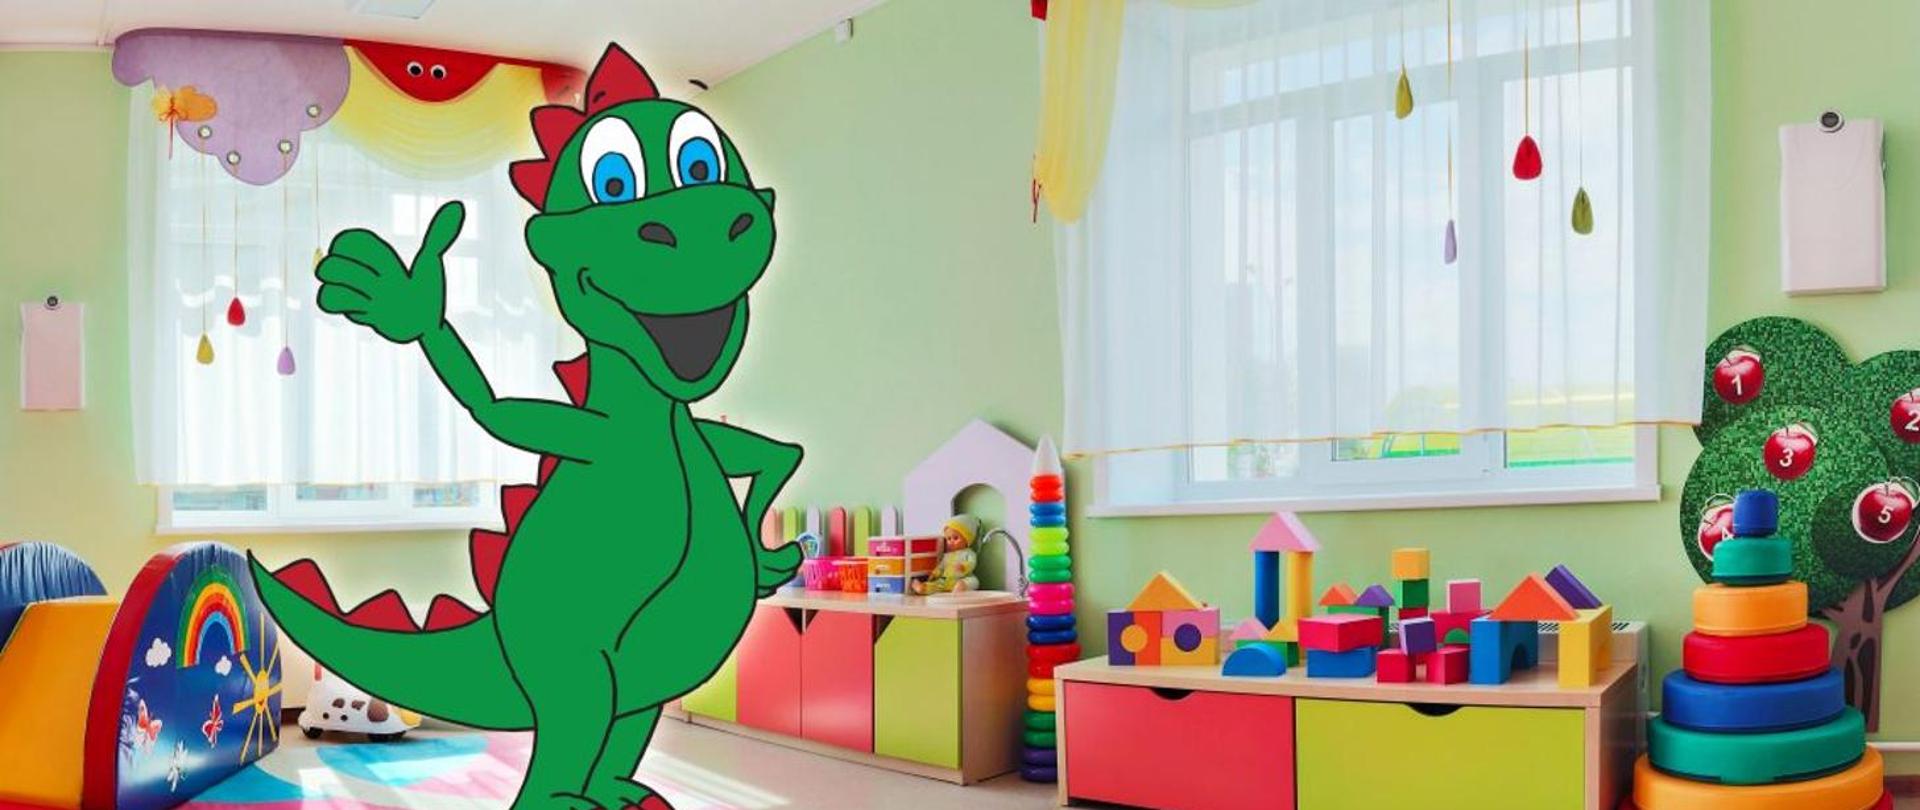 Obrazek przedstawia zielonego smoka, który macha prawą ręką szeroko się uśmiechając. W tle widać kolorowe zabawki. 